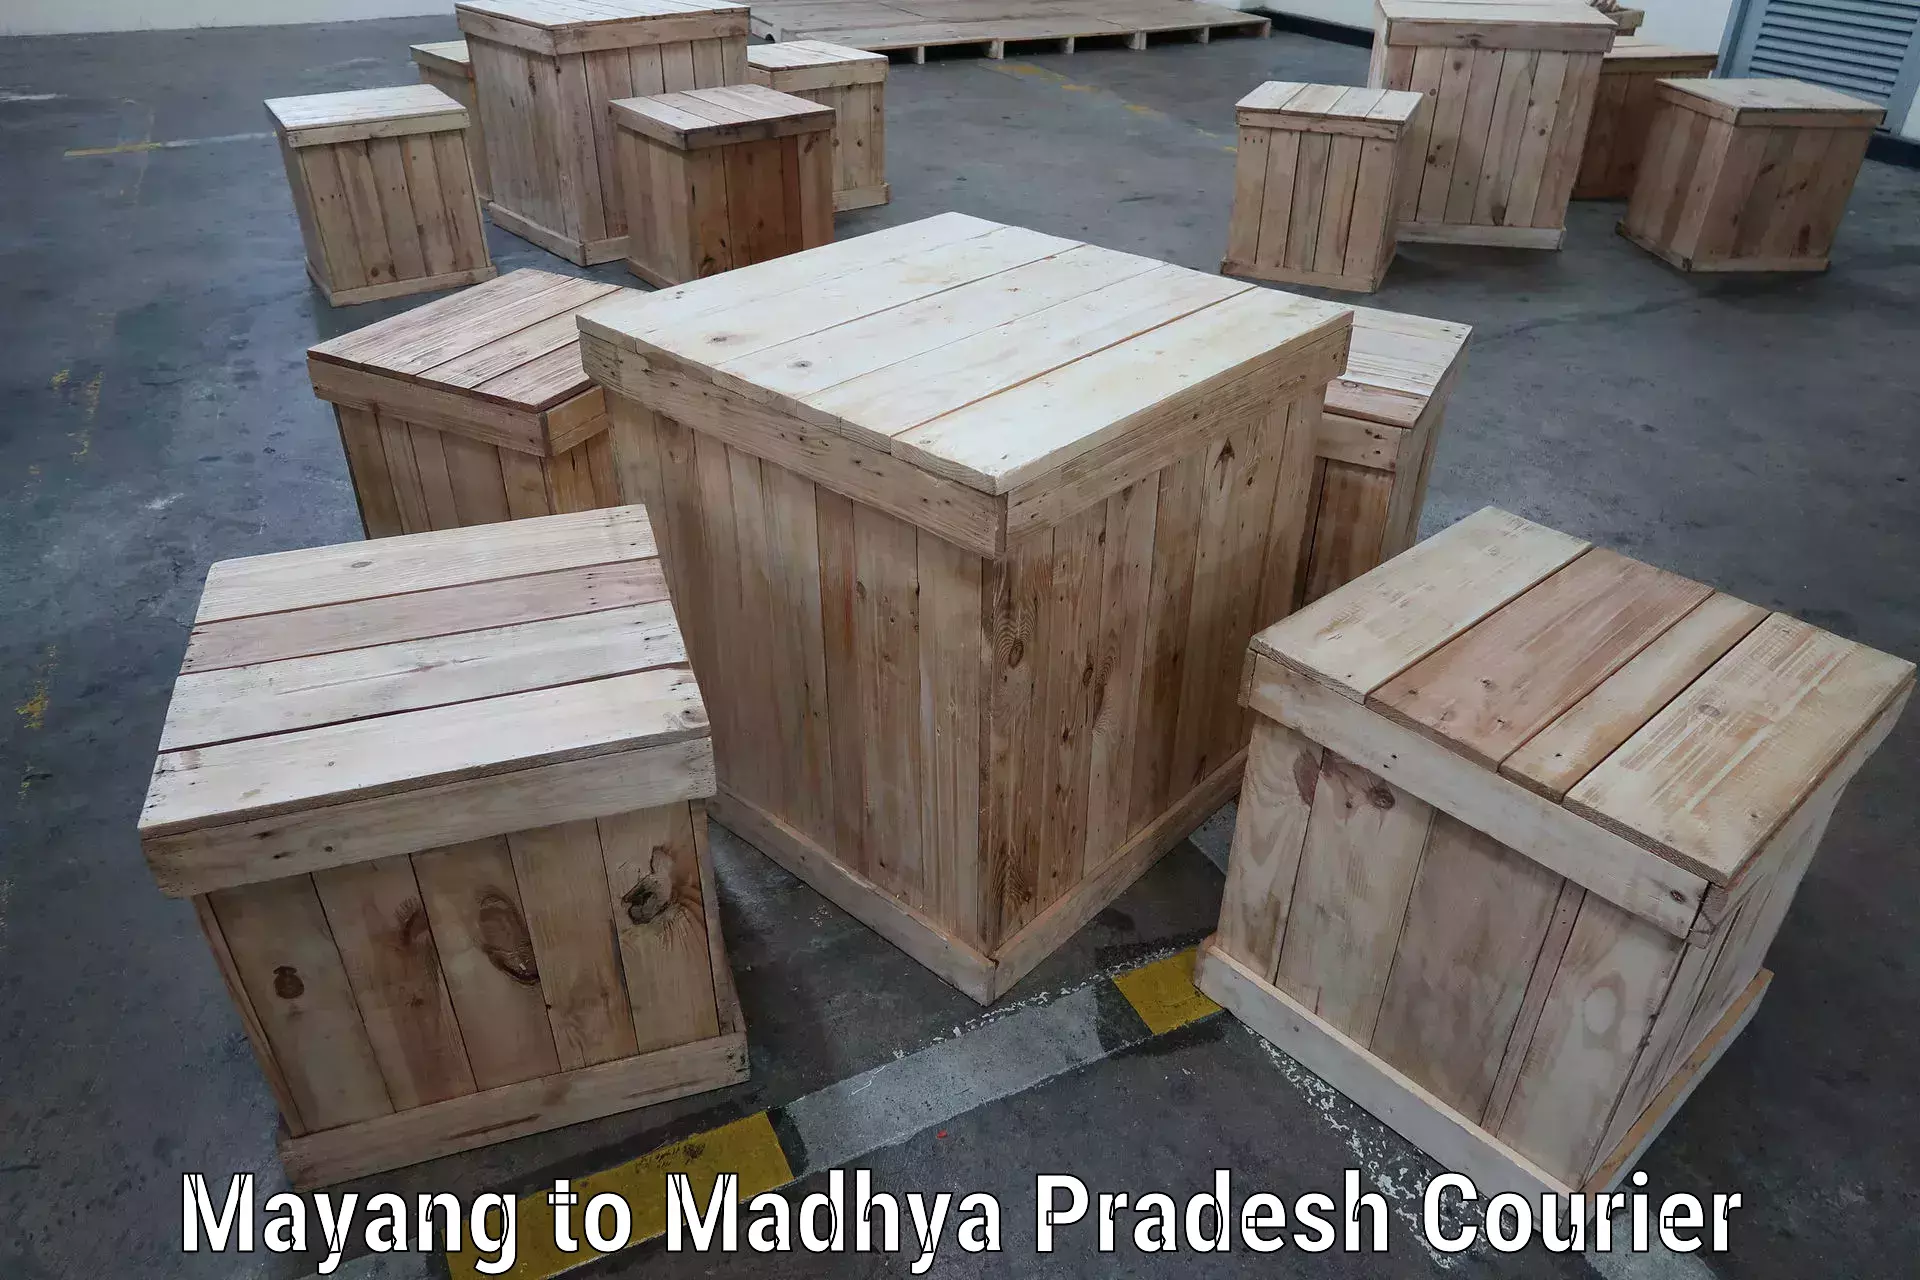 Express mail solutions in Mayang to Madhya Pradesh